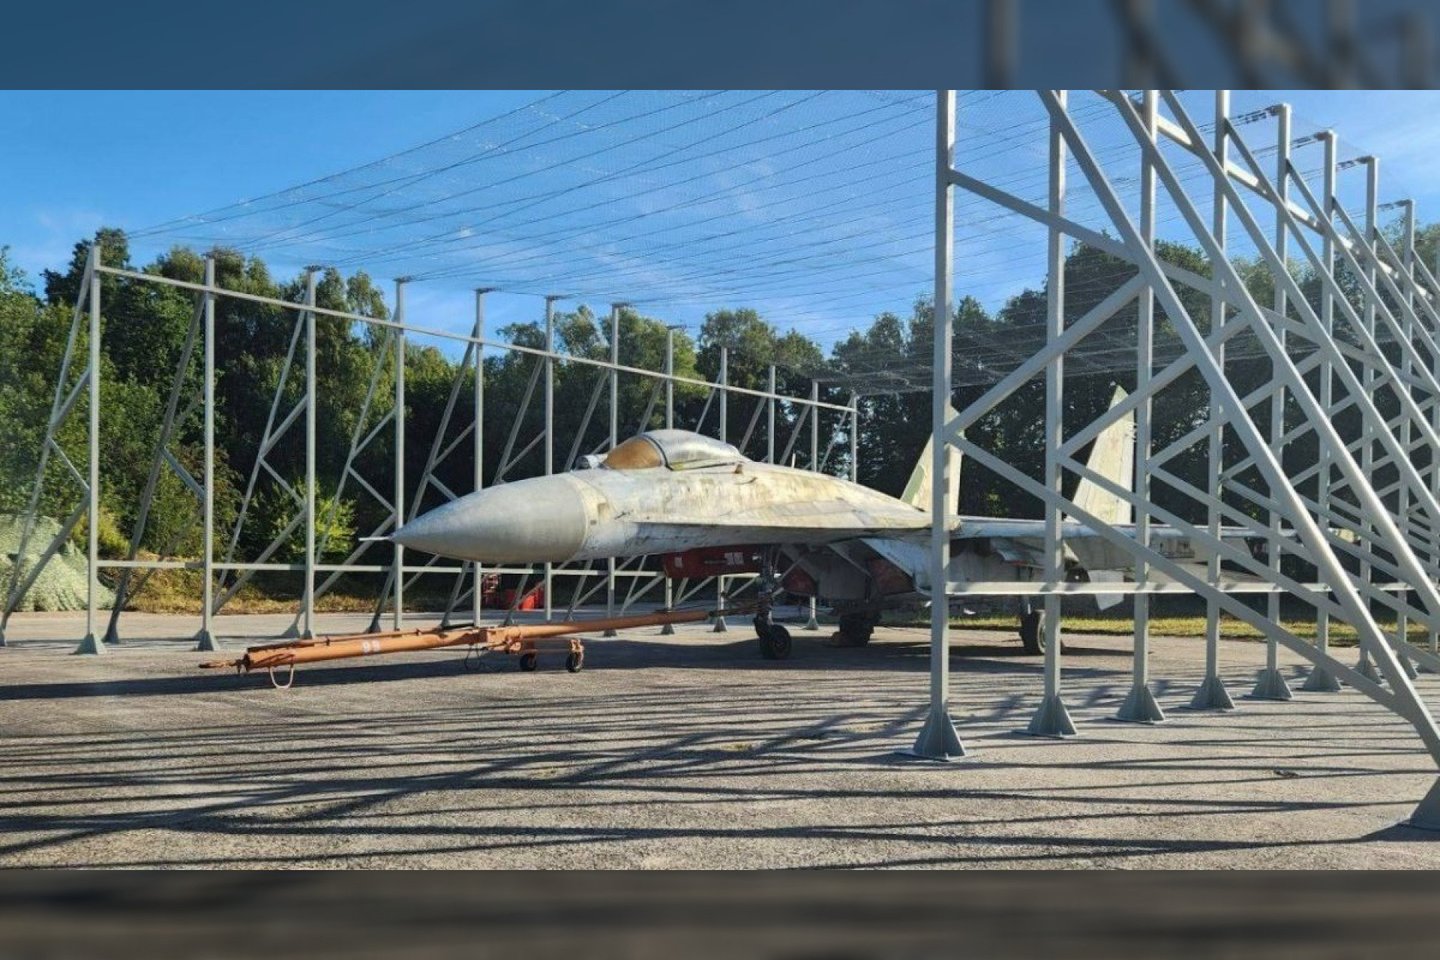  Internete paskelbtos naujos nuotraukos rodo, kad rusai bando naujus sprendimus, kurie apsaugotų jų taktinę aviaciją nuo Ukrainos bepiločių orlaivių. Šiuo atveju tai improvizuotas lengvasis angaras, pagamintas iš metalinio karkaso, padengto vielos tinklu.<br> Atvirųjų šaltinių iliustr.